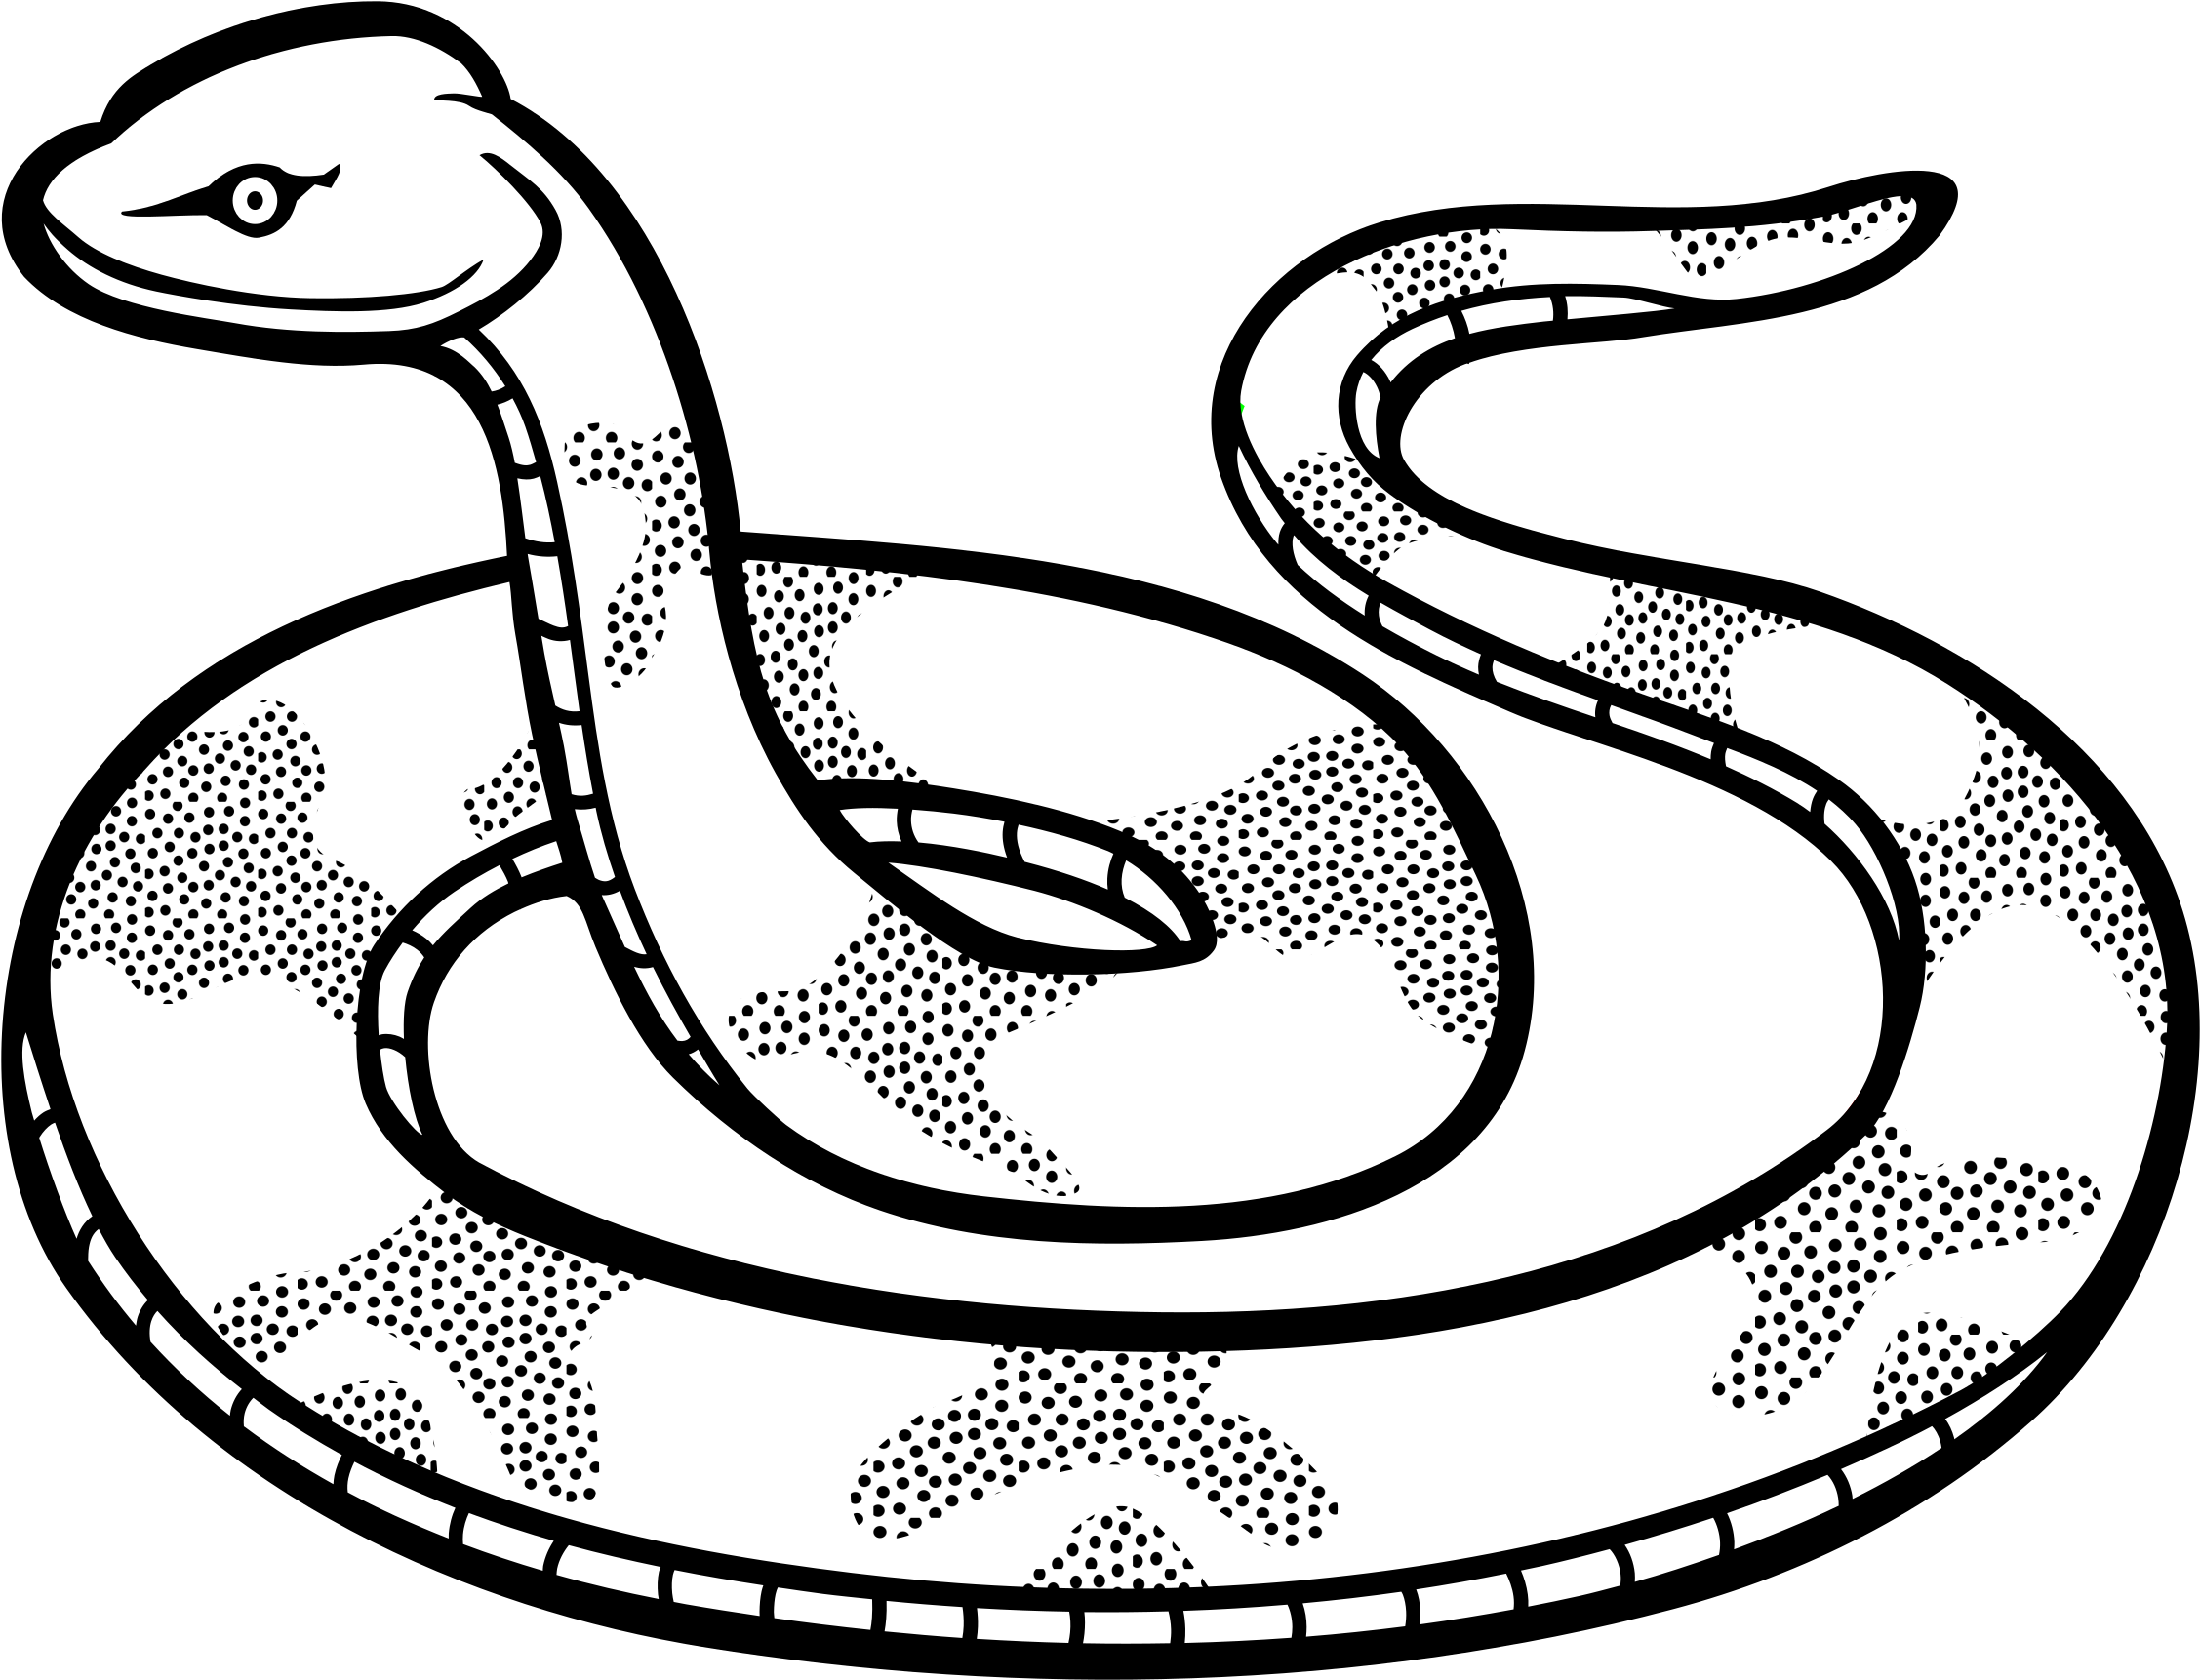 bouleydesign: Black And White Snake Maryland